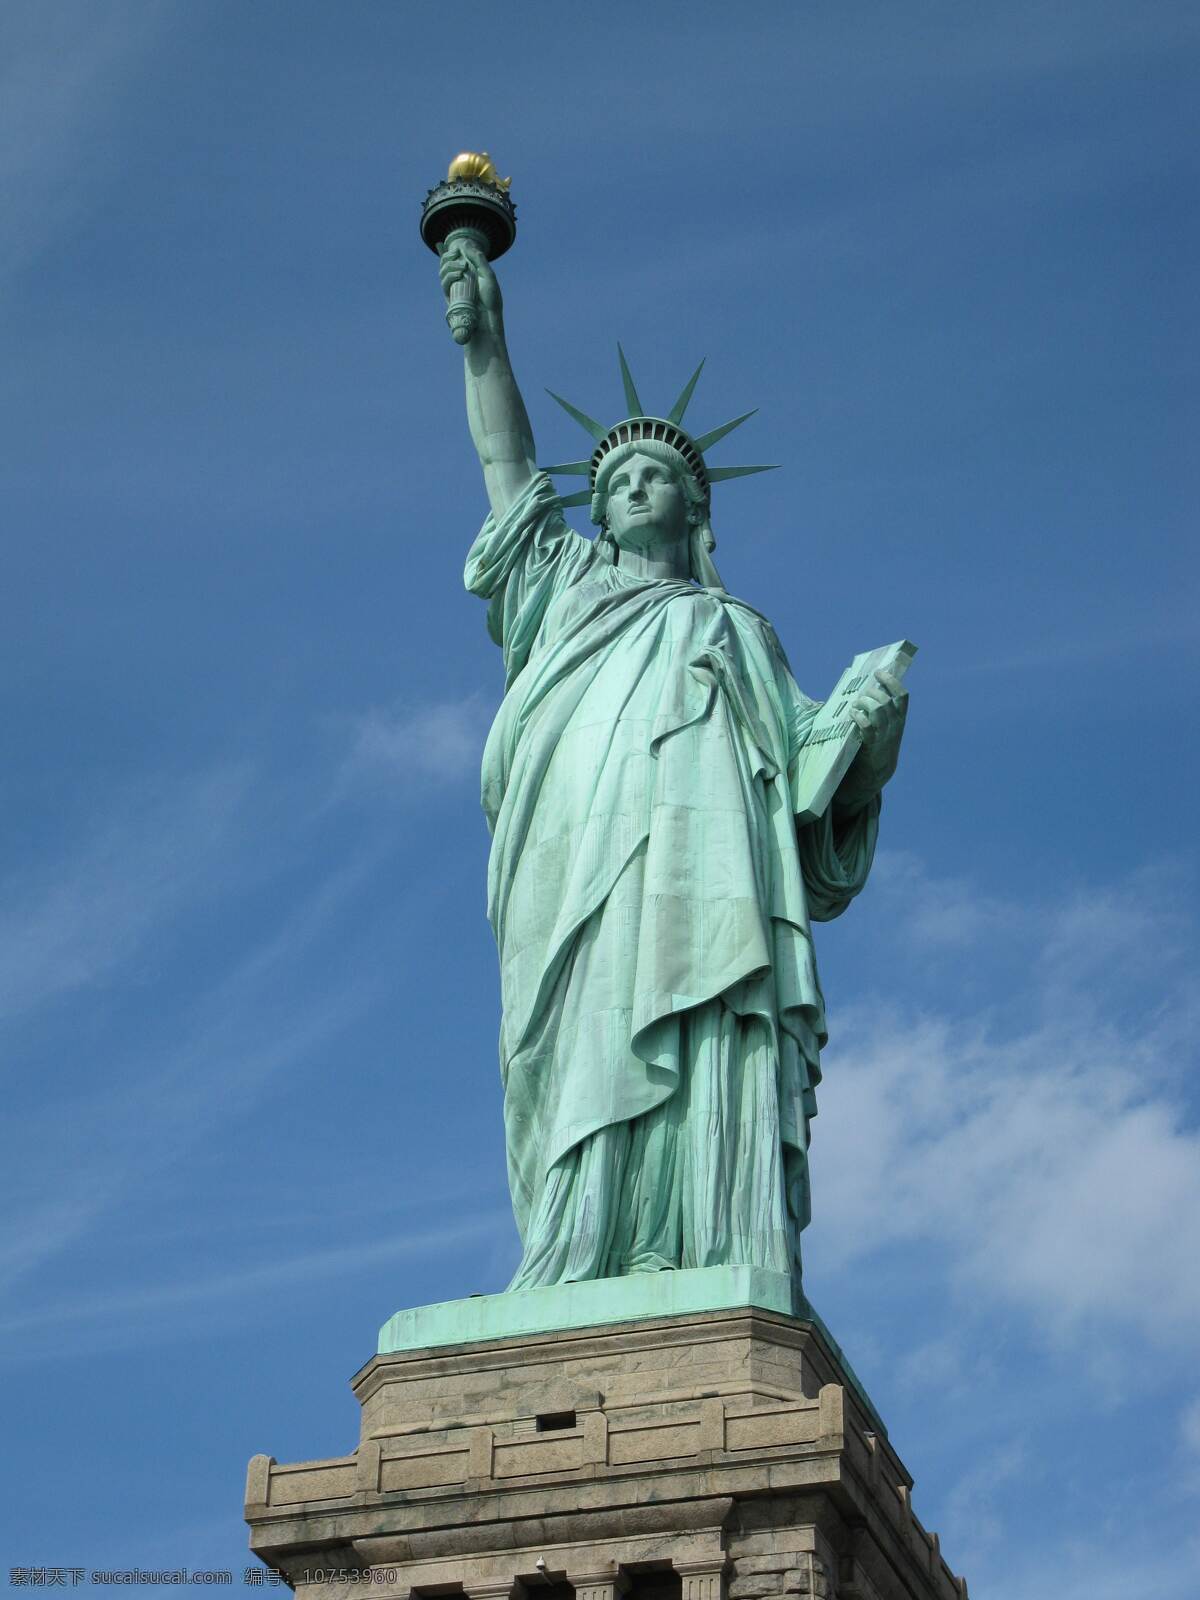 自由女神像 自由女神 美国自由女神 自由女神铜像 铜像 雕像 纽约 美国纽约 未分类杂图 旅游摄影 国外旅游